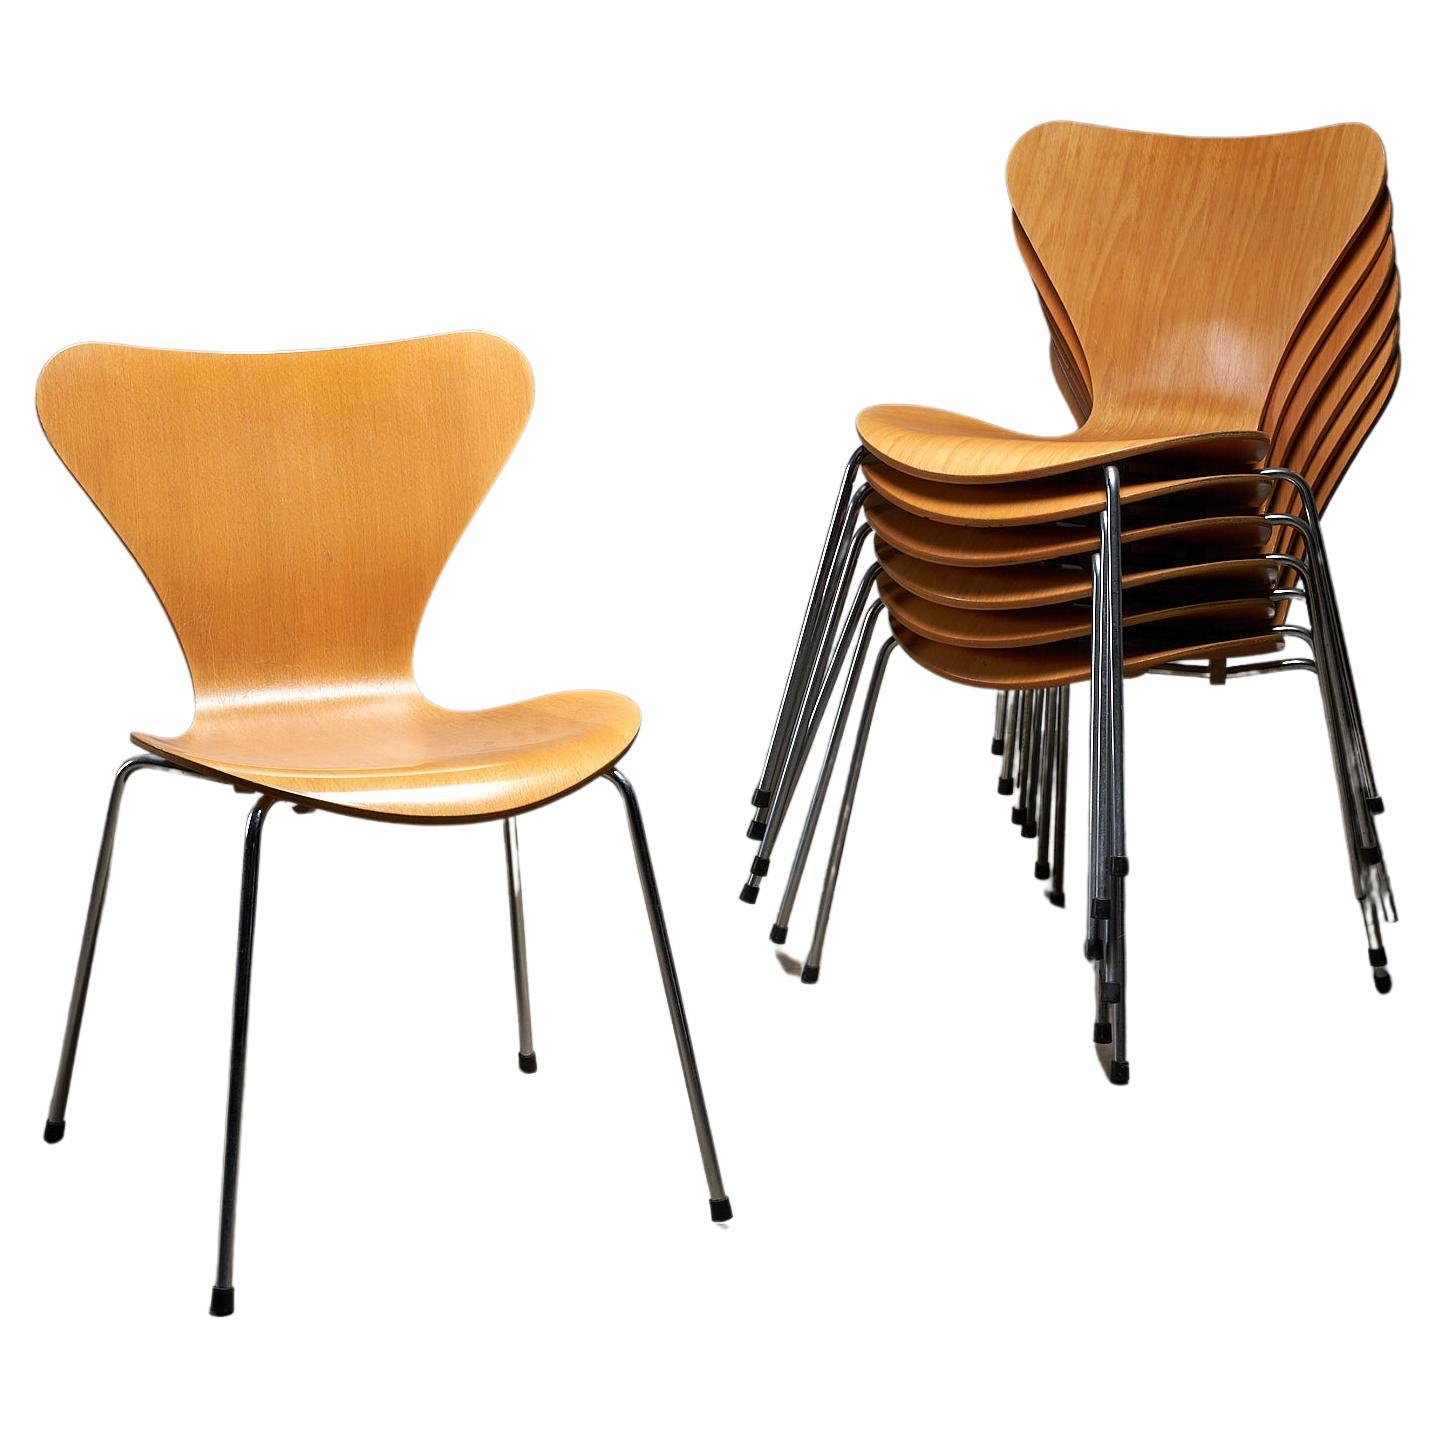 Wir stellen die ikonischen Stühle der Serie 7 von Arne Jacobsen für Fritz Hansen vor. Diese Meisterwerke der skandinavischen Moderne strahlen zeitlose Eleganz aus und eignen sich perfekt für den Einsatz im Esszimmer oder im Büro. Mit diesen